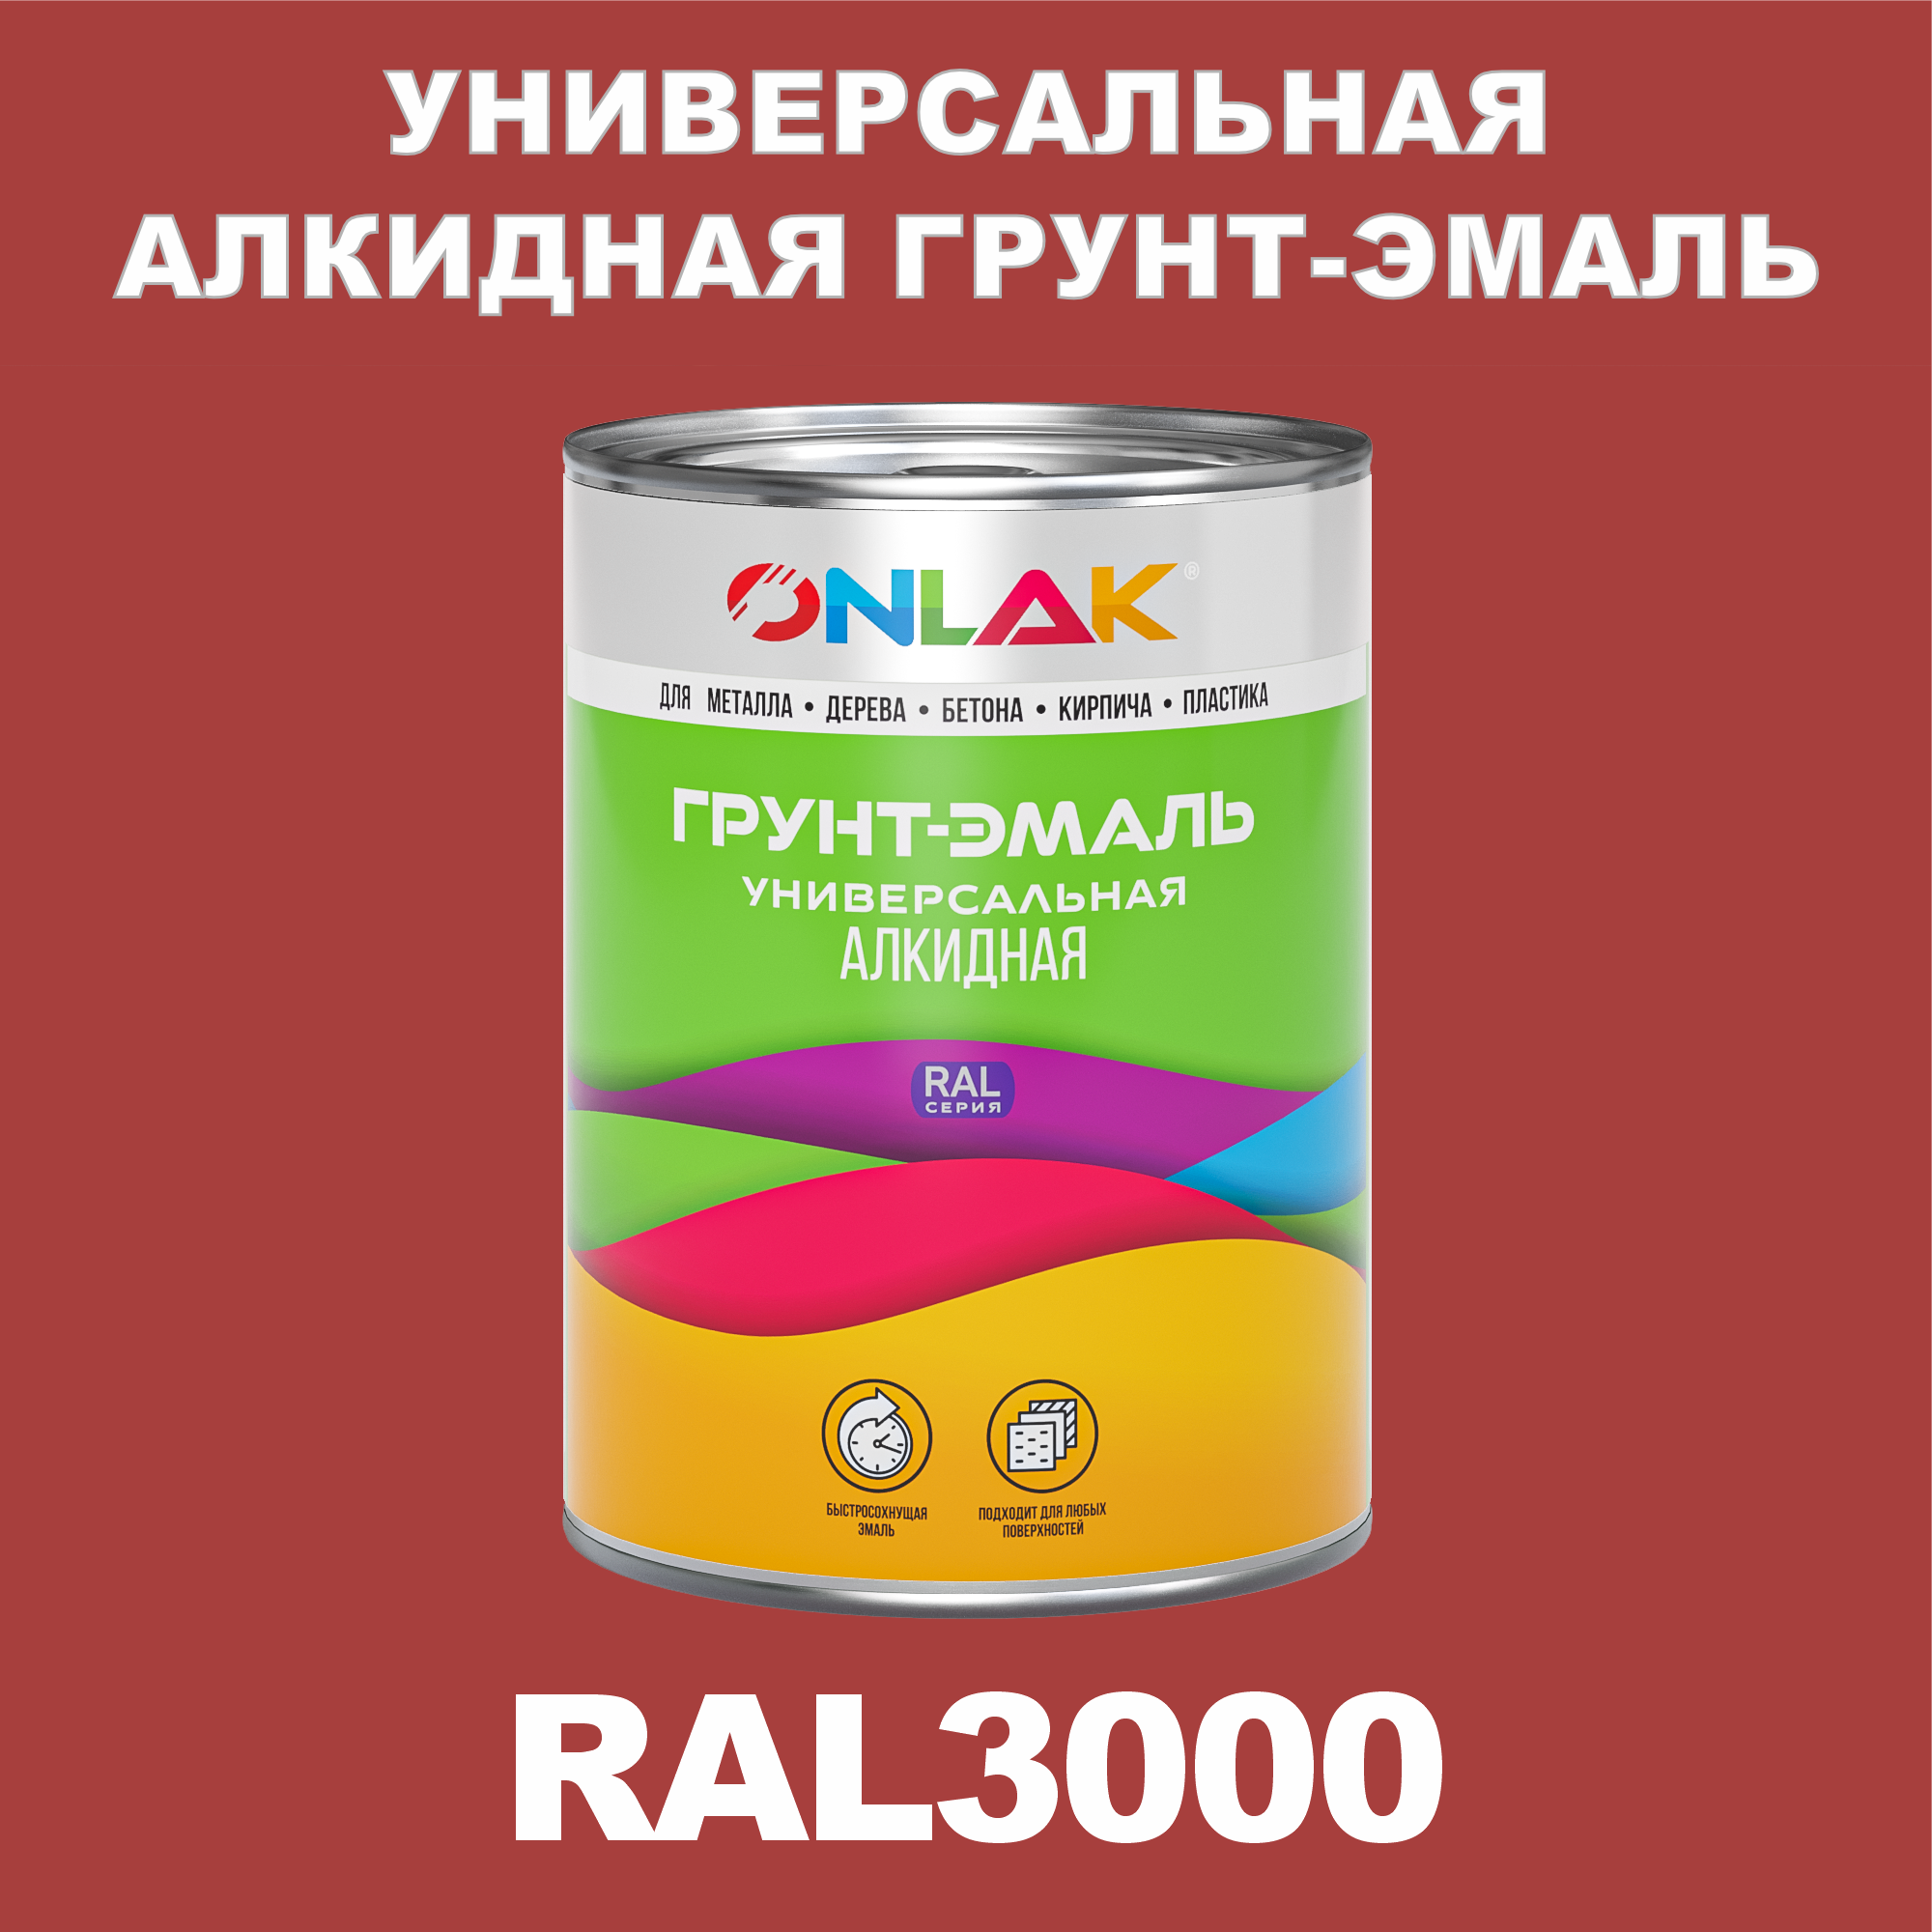 Грунт-эмаль ONLAK 1К RAL3000 антикоррозионная алкидная по металлу по ржавчине 1 кг